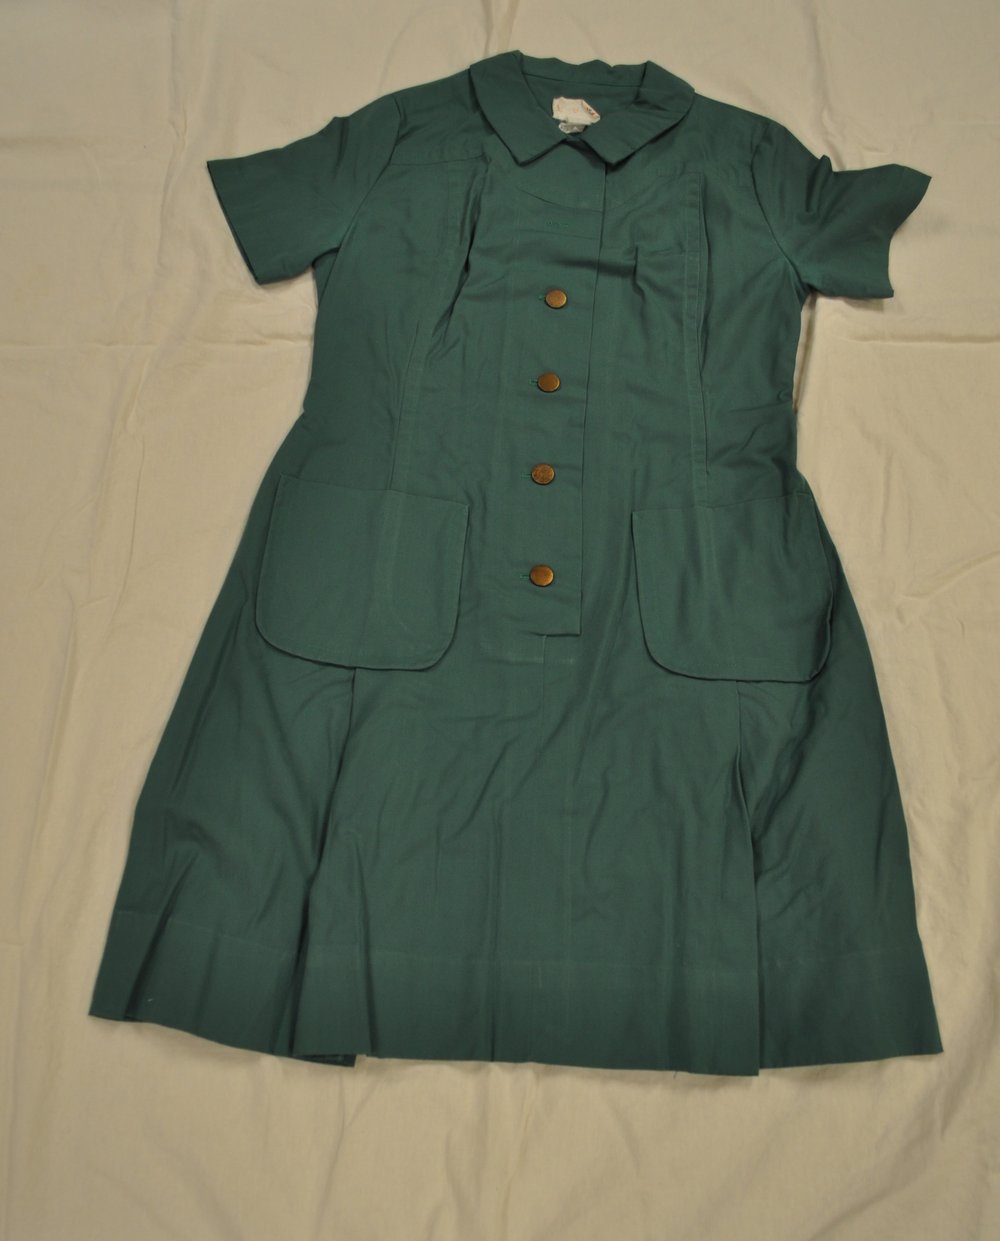 Figure 8: 1968 Troop Leader uniform